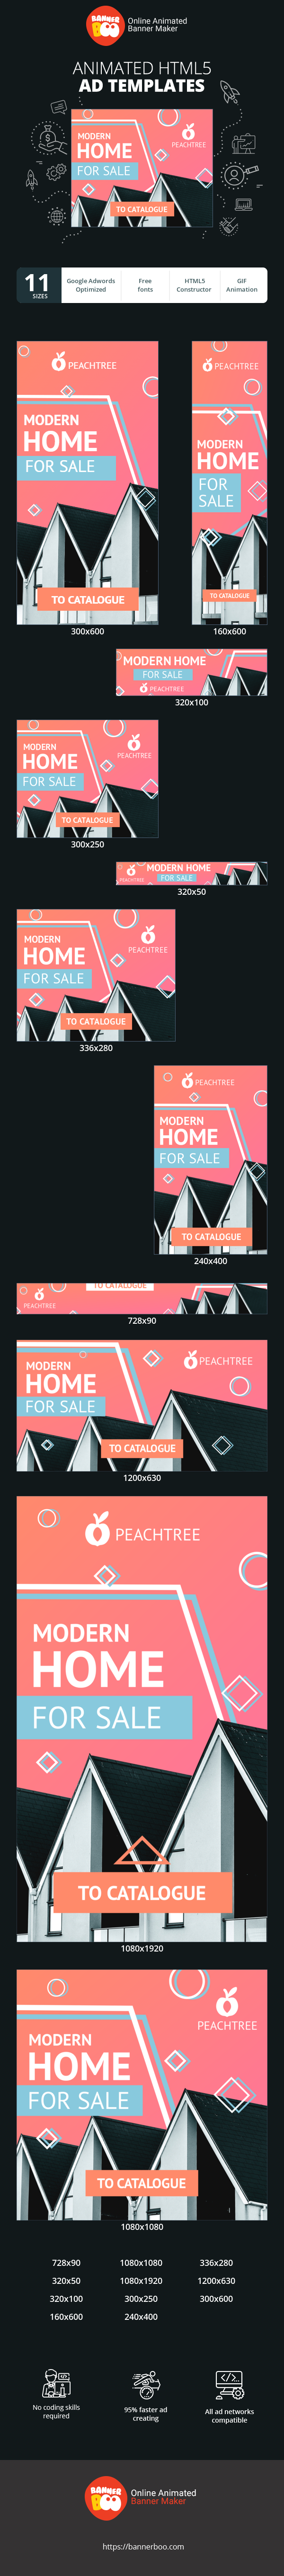 Szablon reklamy banerowej — Modern Home — For Sale